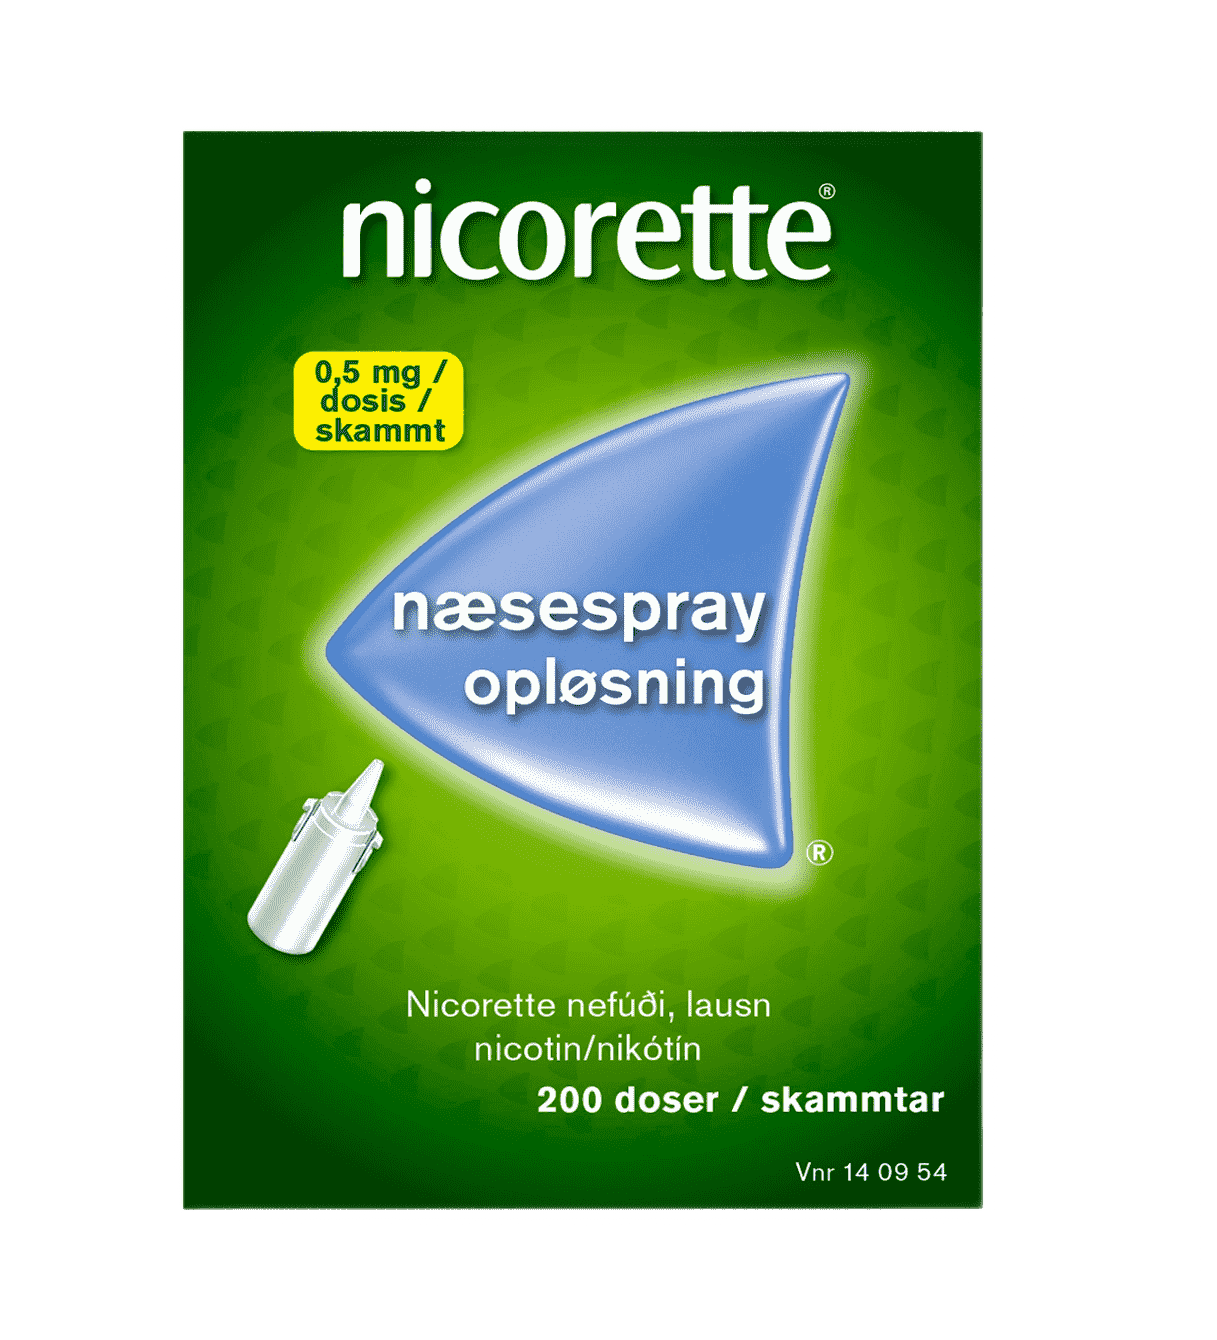 Nicorette Nasal Spray